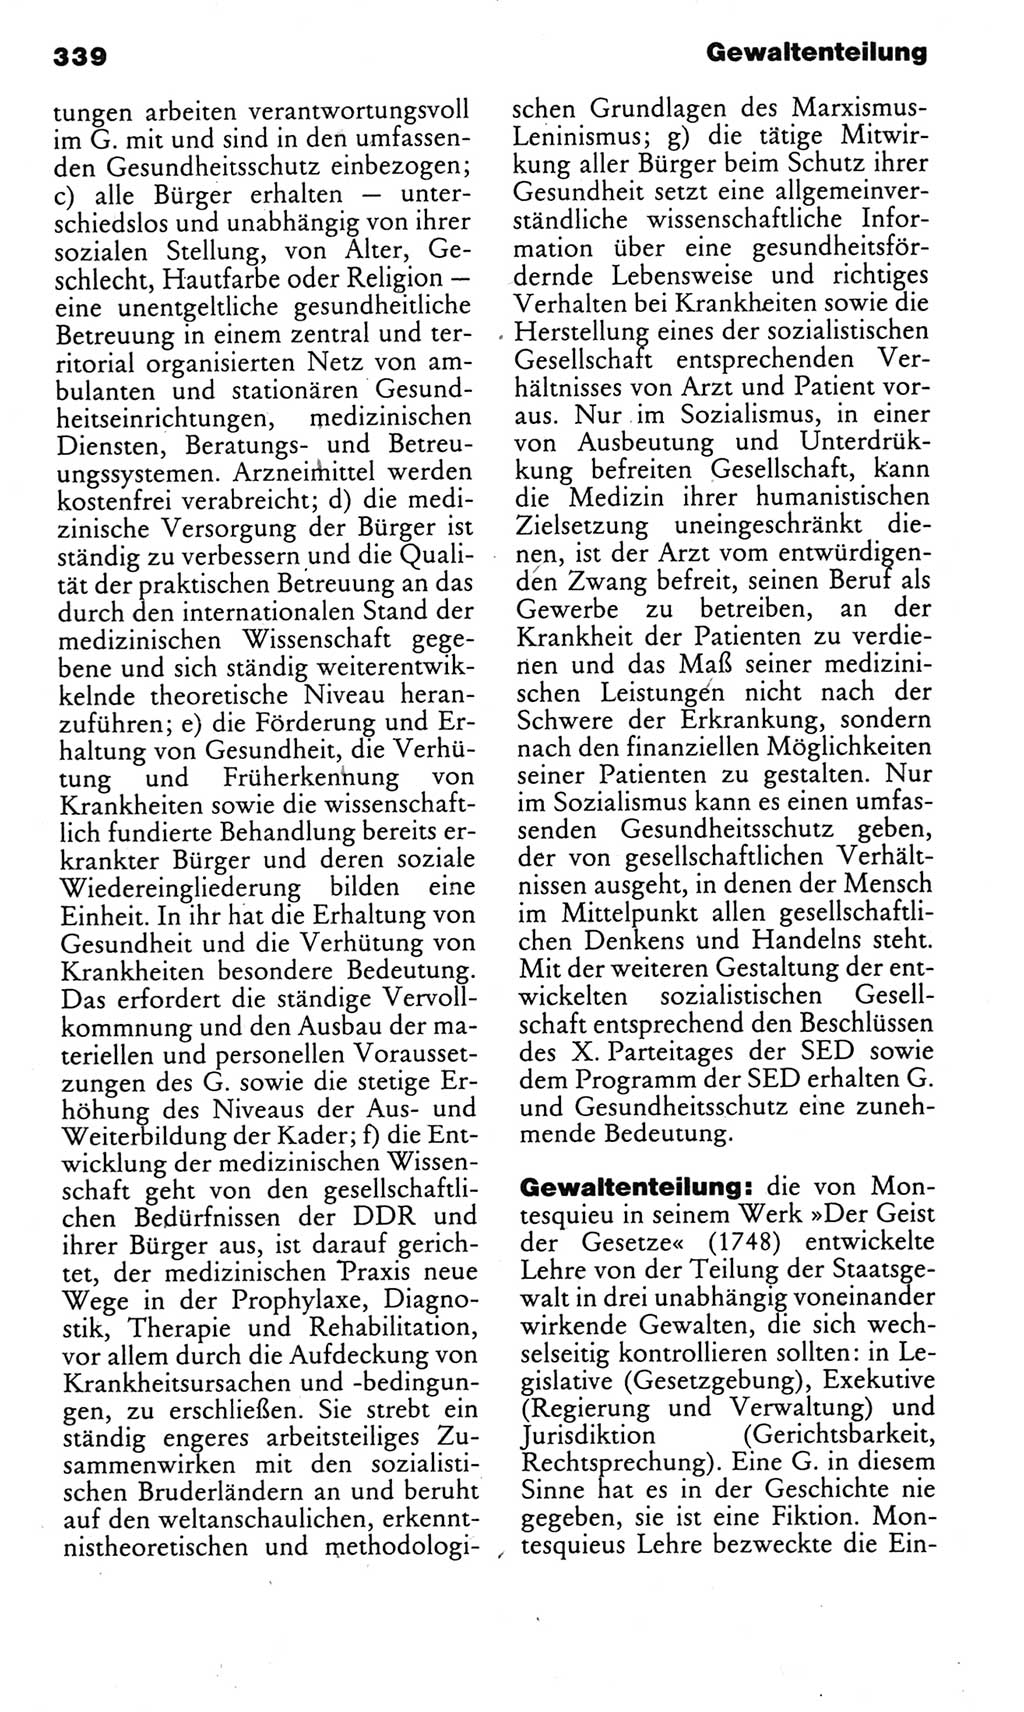 Kleines politisches Wörterbuch [Deutsche Demokratische Republik (DDR)] 1985, Seite 339 (Kl. pol. Wb. DDR 1985, S. 339)